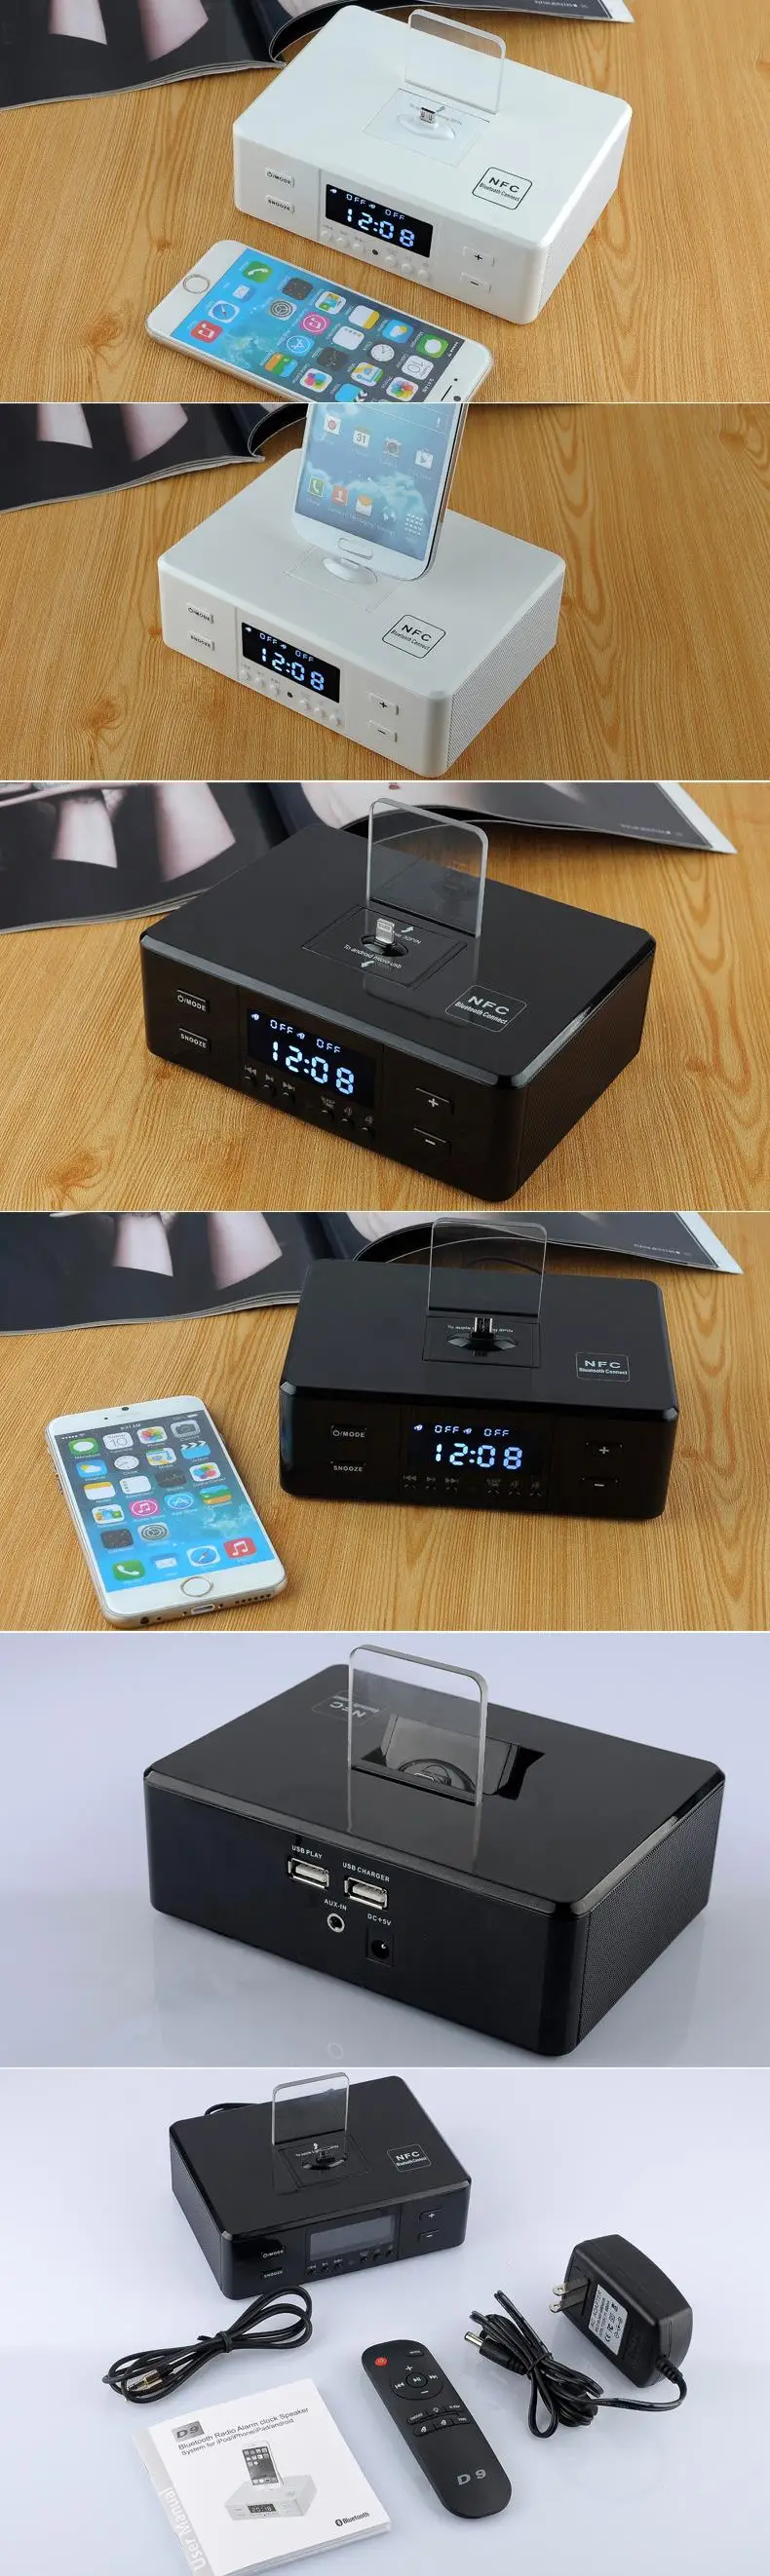 D9 беспроводной Bluetooth динамик поддержка будильник NFC FM радио зарядное устройство док-станция для iPhone 5 6 6S 7 Plus Android смартфон